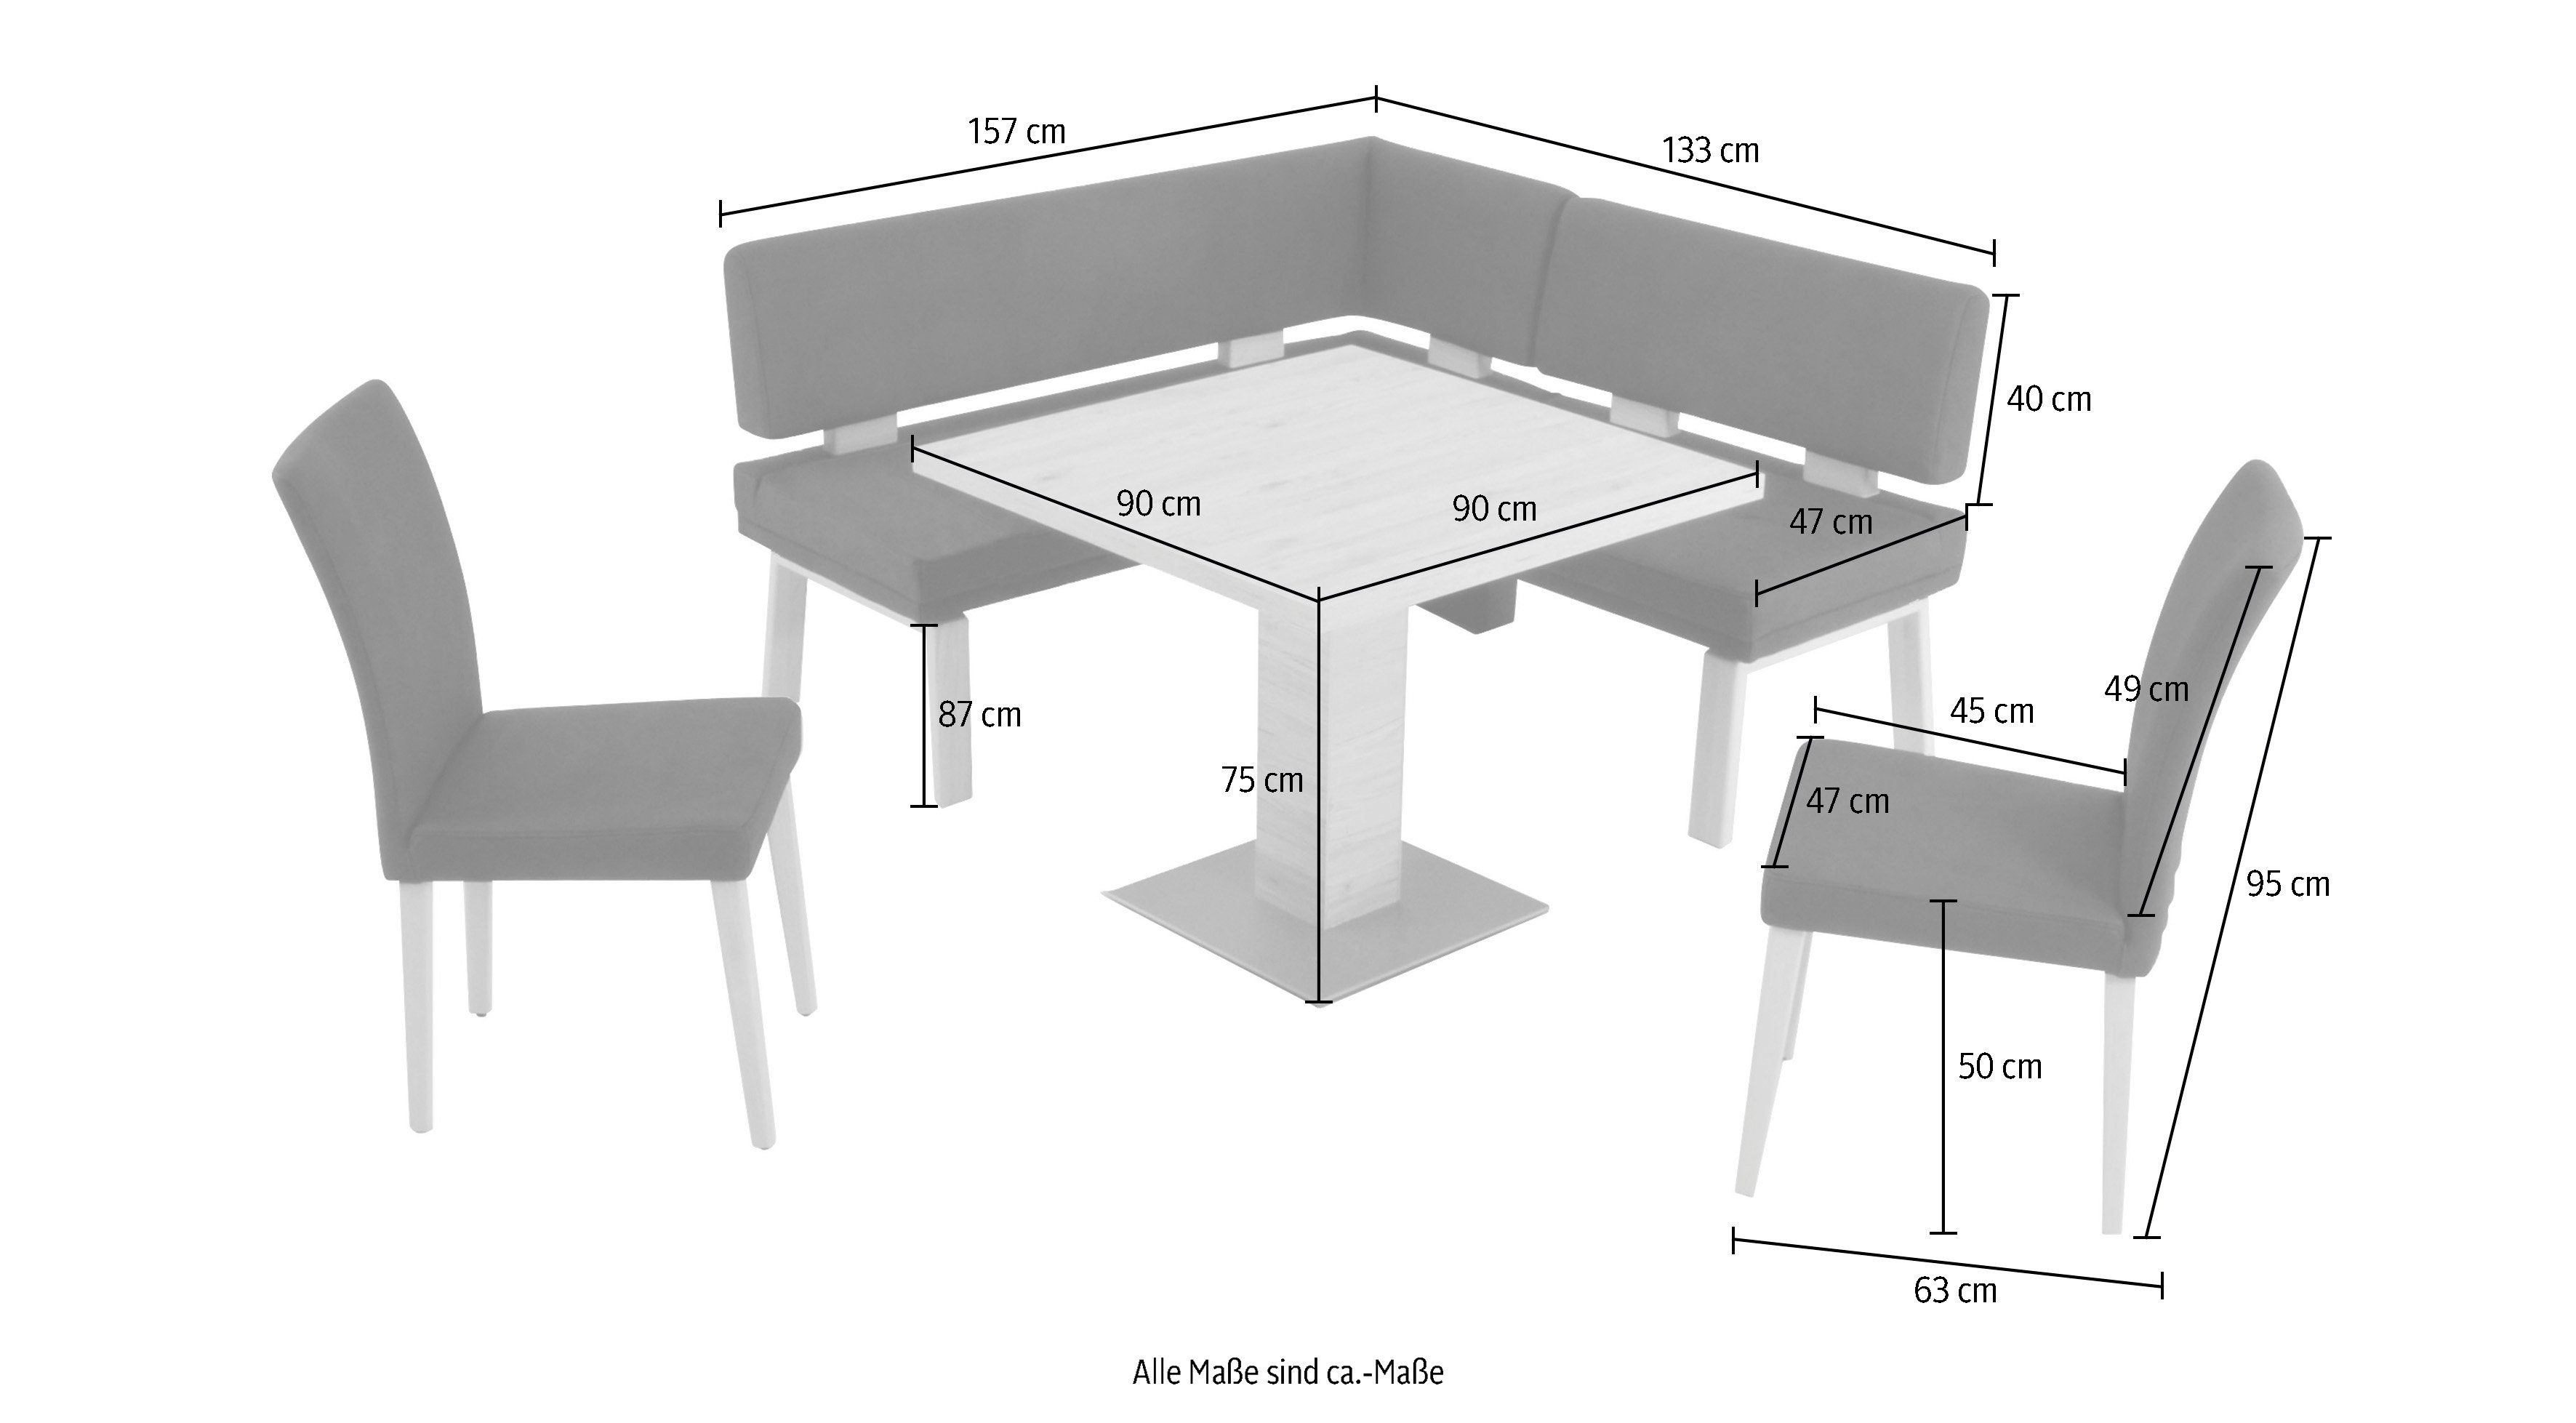 Santos Wohnen Eiche zwei 157cm, black I, gleichschenklig Eckbankgruppe Tisch & 90x90cm, und K+W Komfort 4-Fußholzstühle